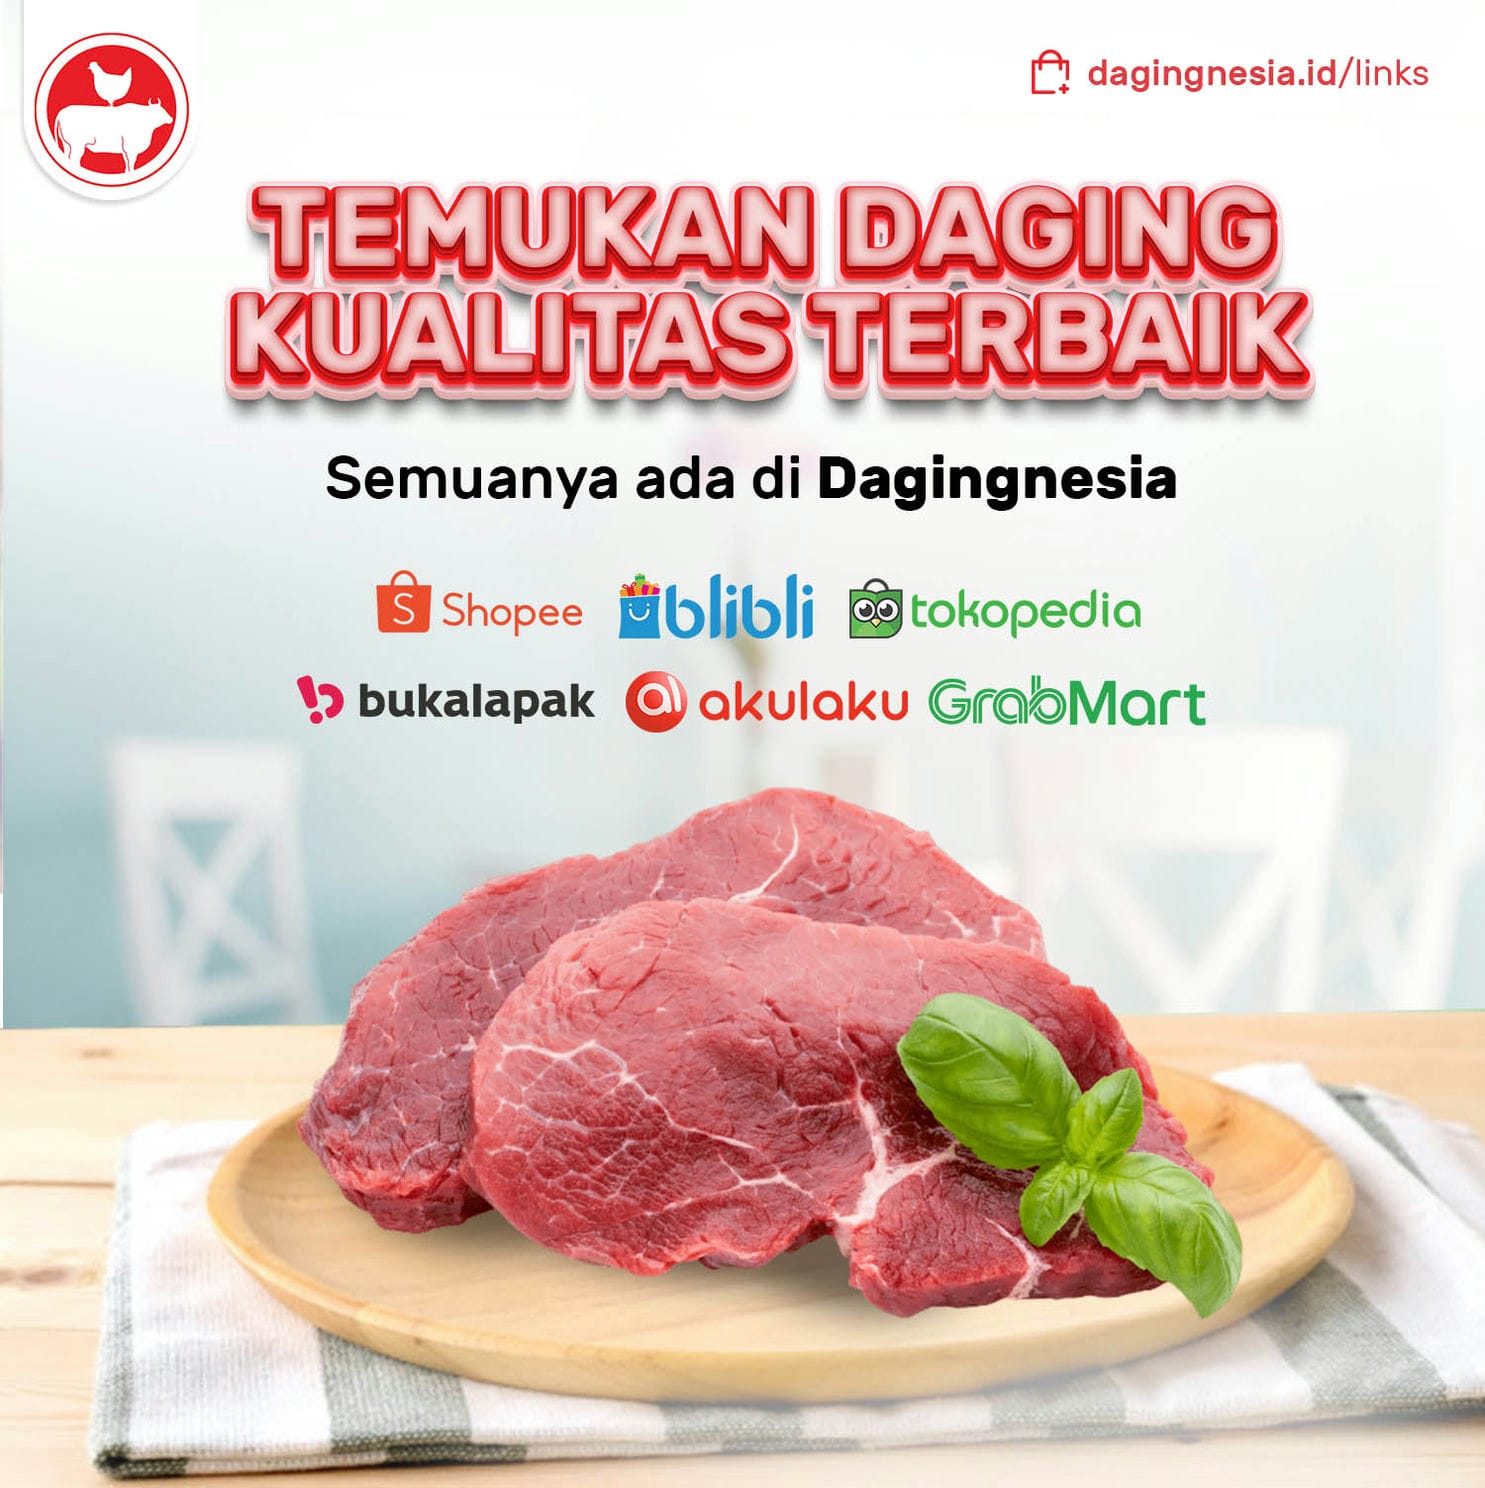 Daging Berkualitas Premium, Tersedia di Dagingnesia